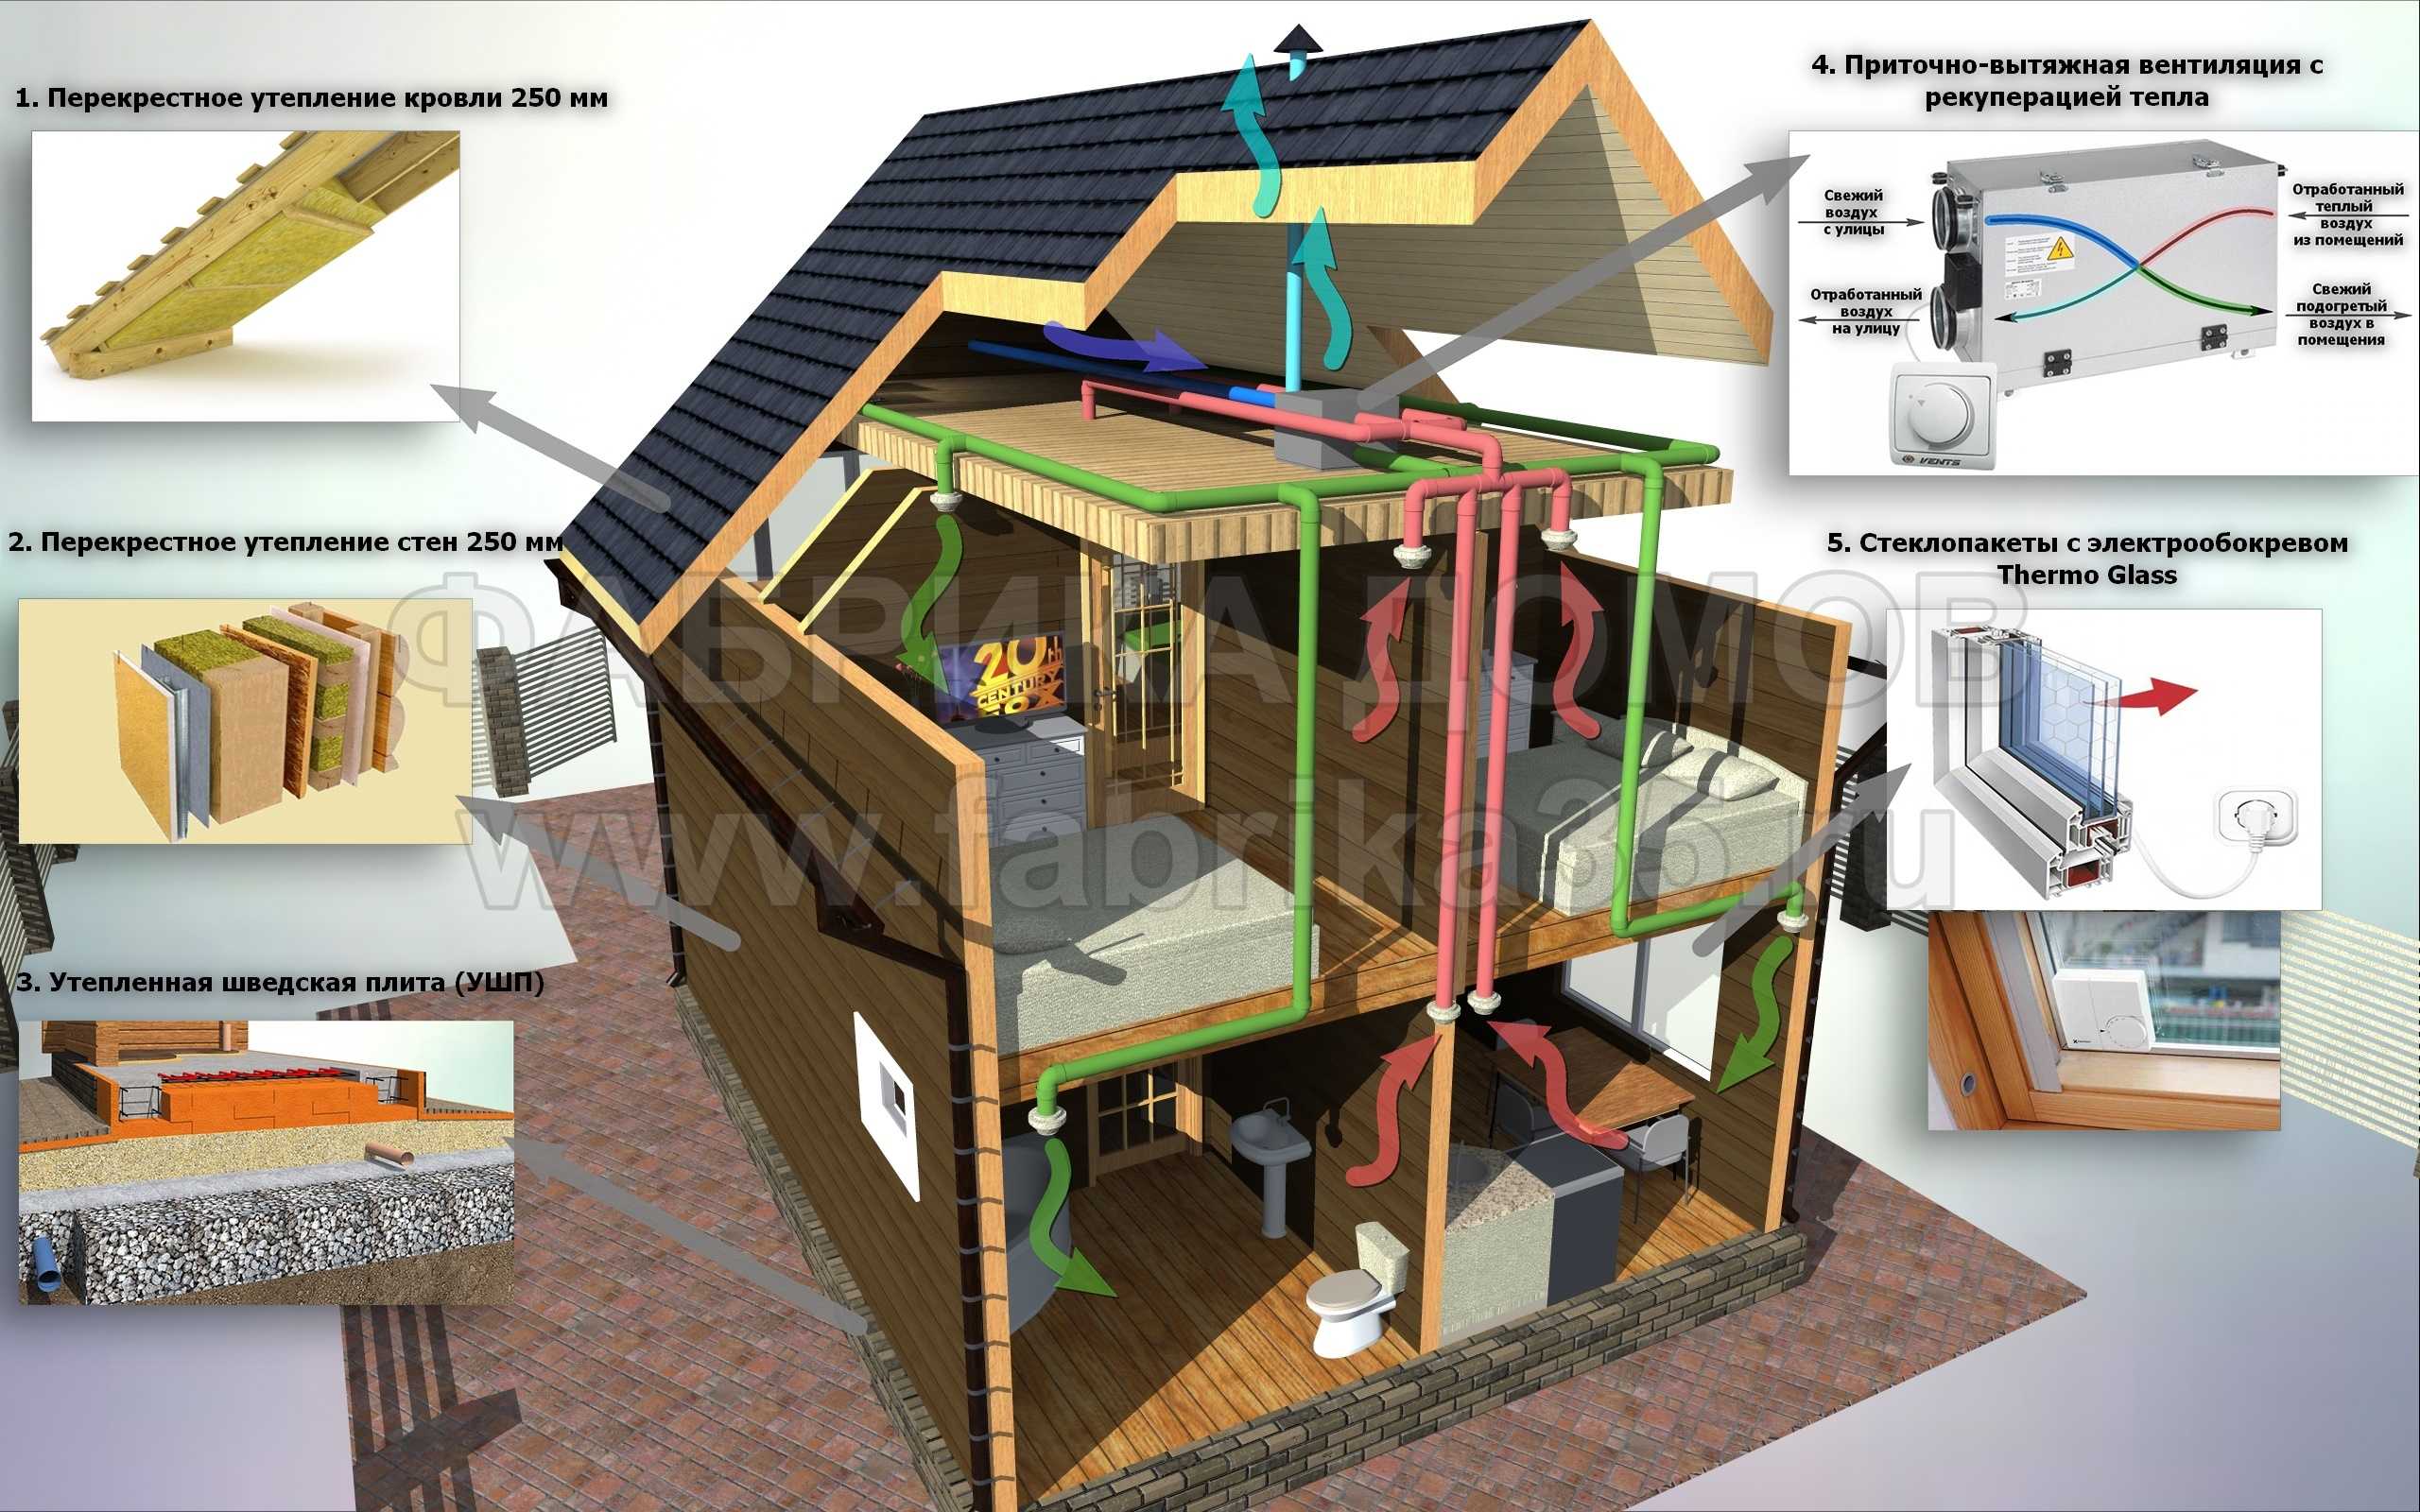 Энергосберегающий дом  жилище, расходы на содержание которого минимальны, ведь задействованы природные ресурсы солнечный свет, энергия почвы и воздуха, ветра, что вместе с системами экономии позволяет добиваться потрясающих результатов